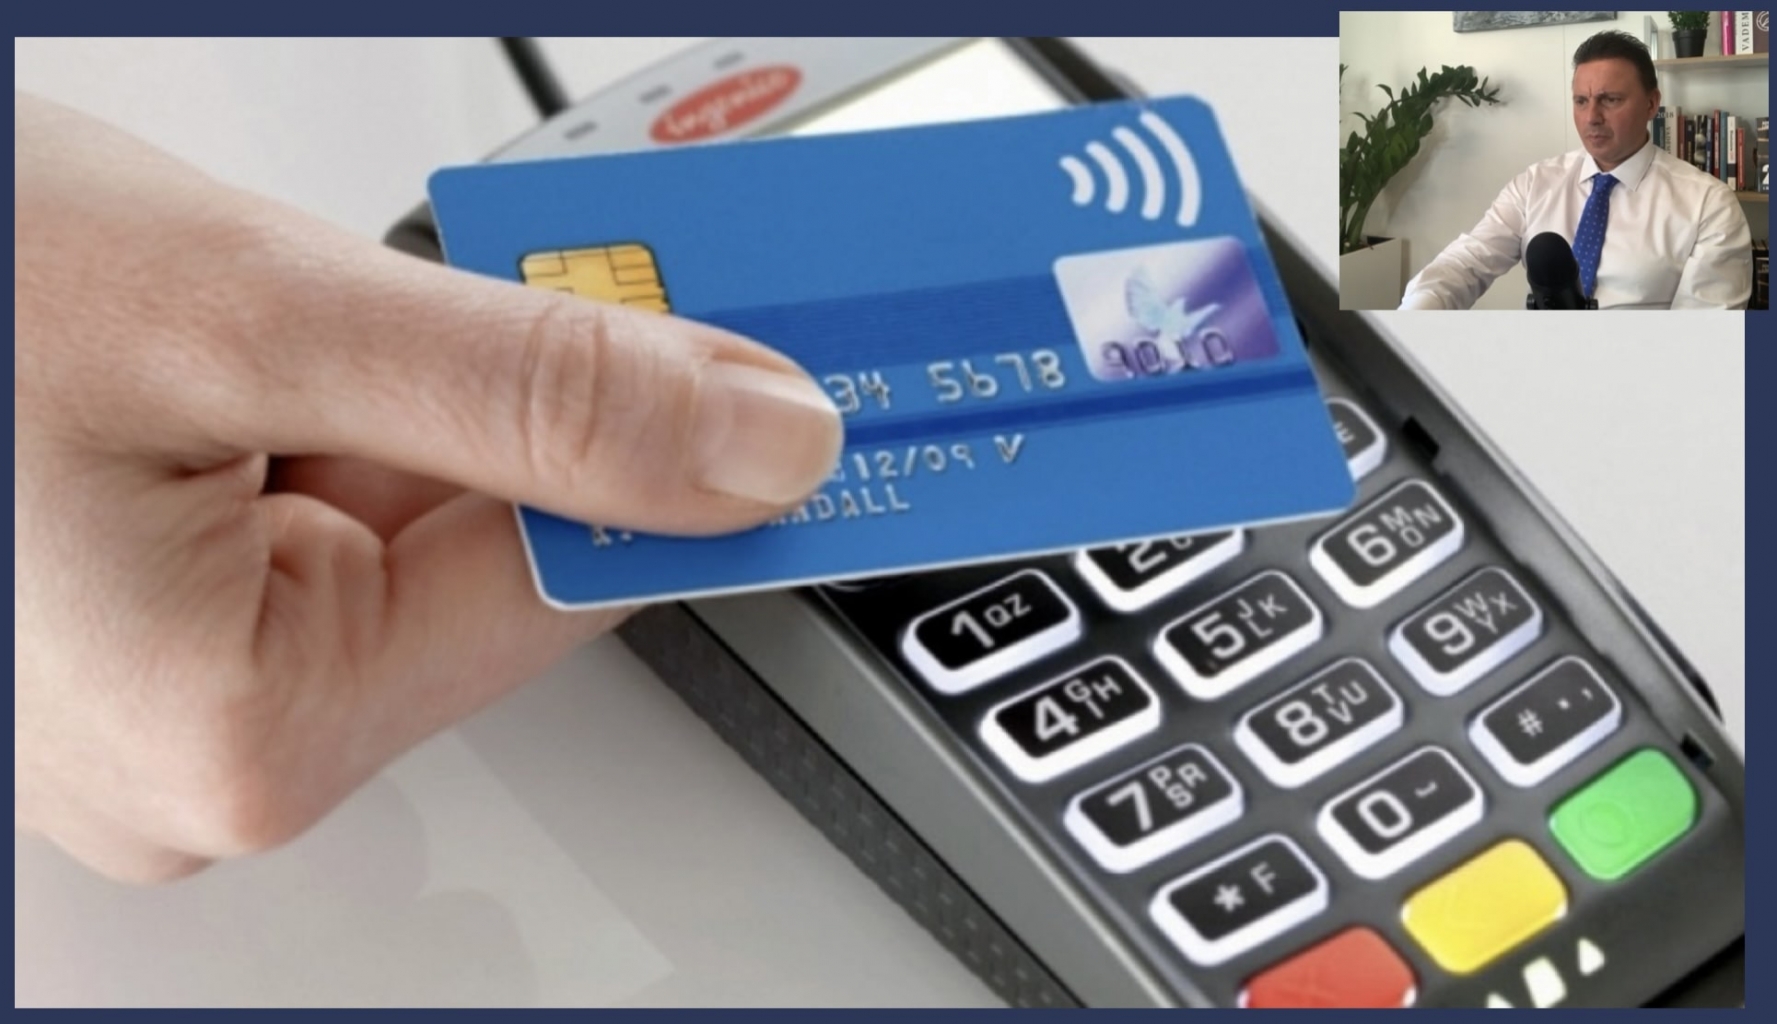 Pagamenti elettronici, in arrivo multe per chi non accetta bancomat e carte di credito